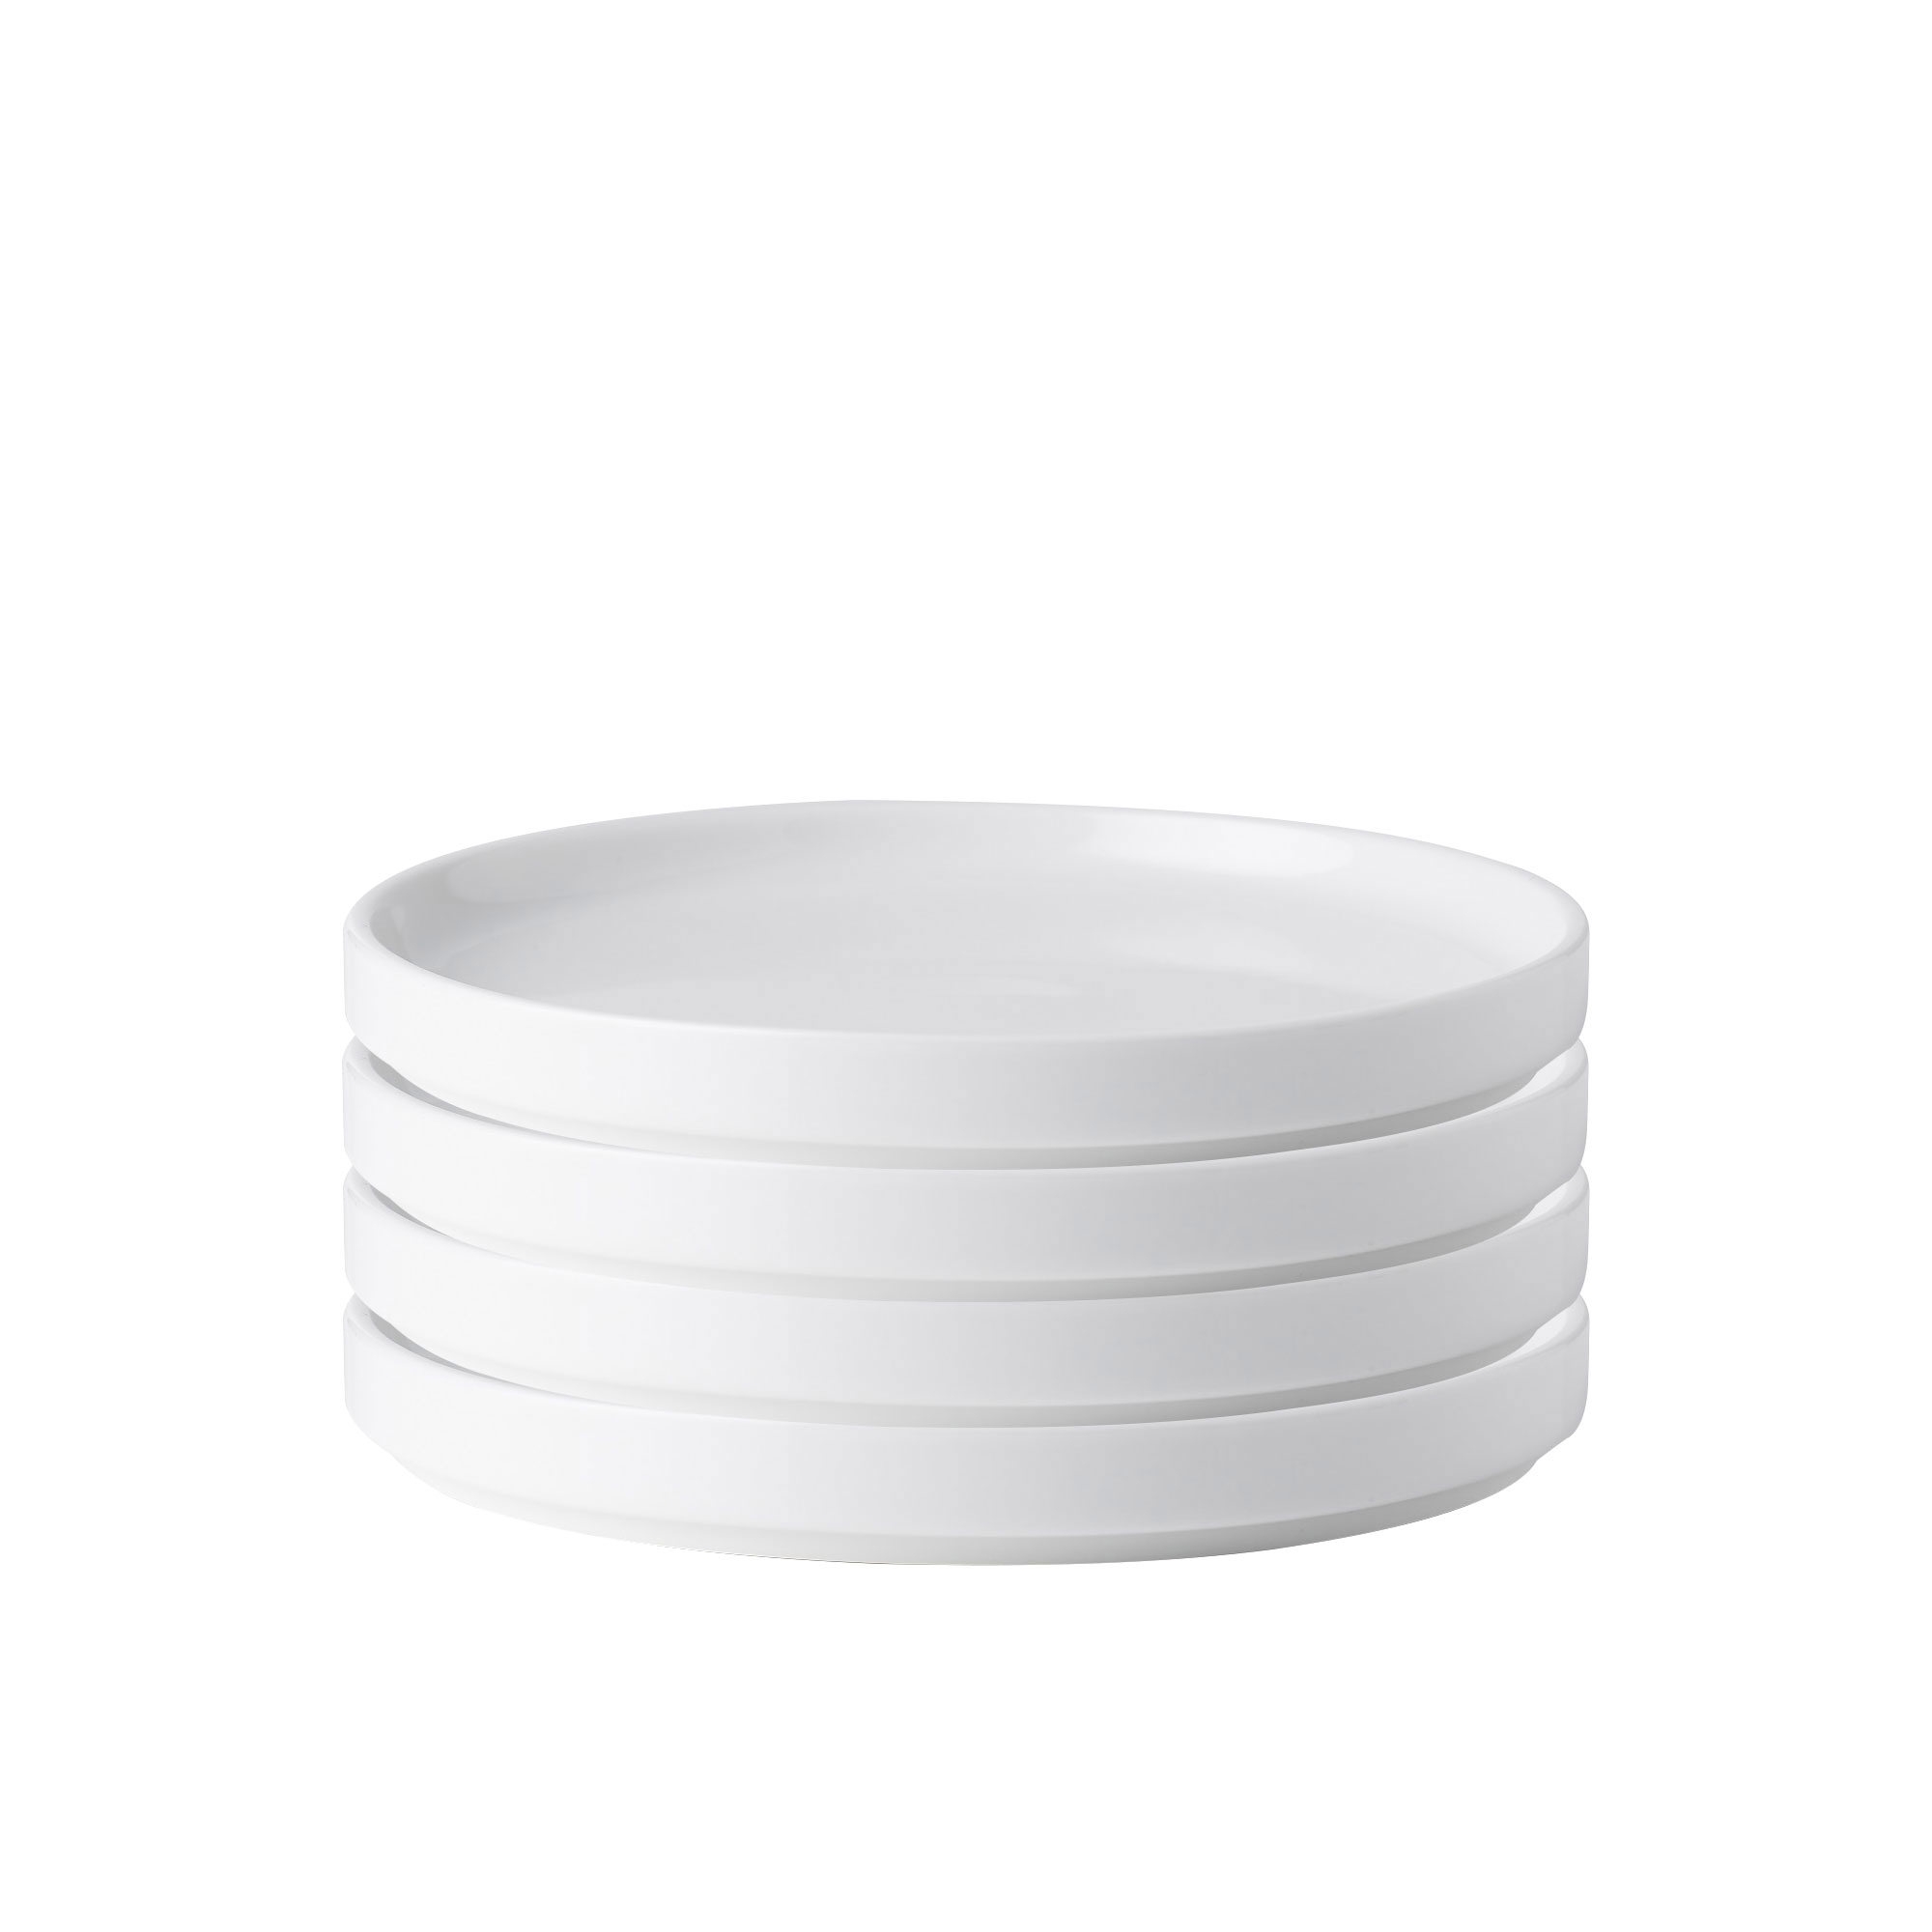 Noritake Stax White Entree Plate Set of 4 Image 1